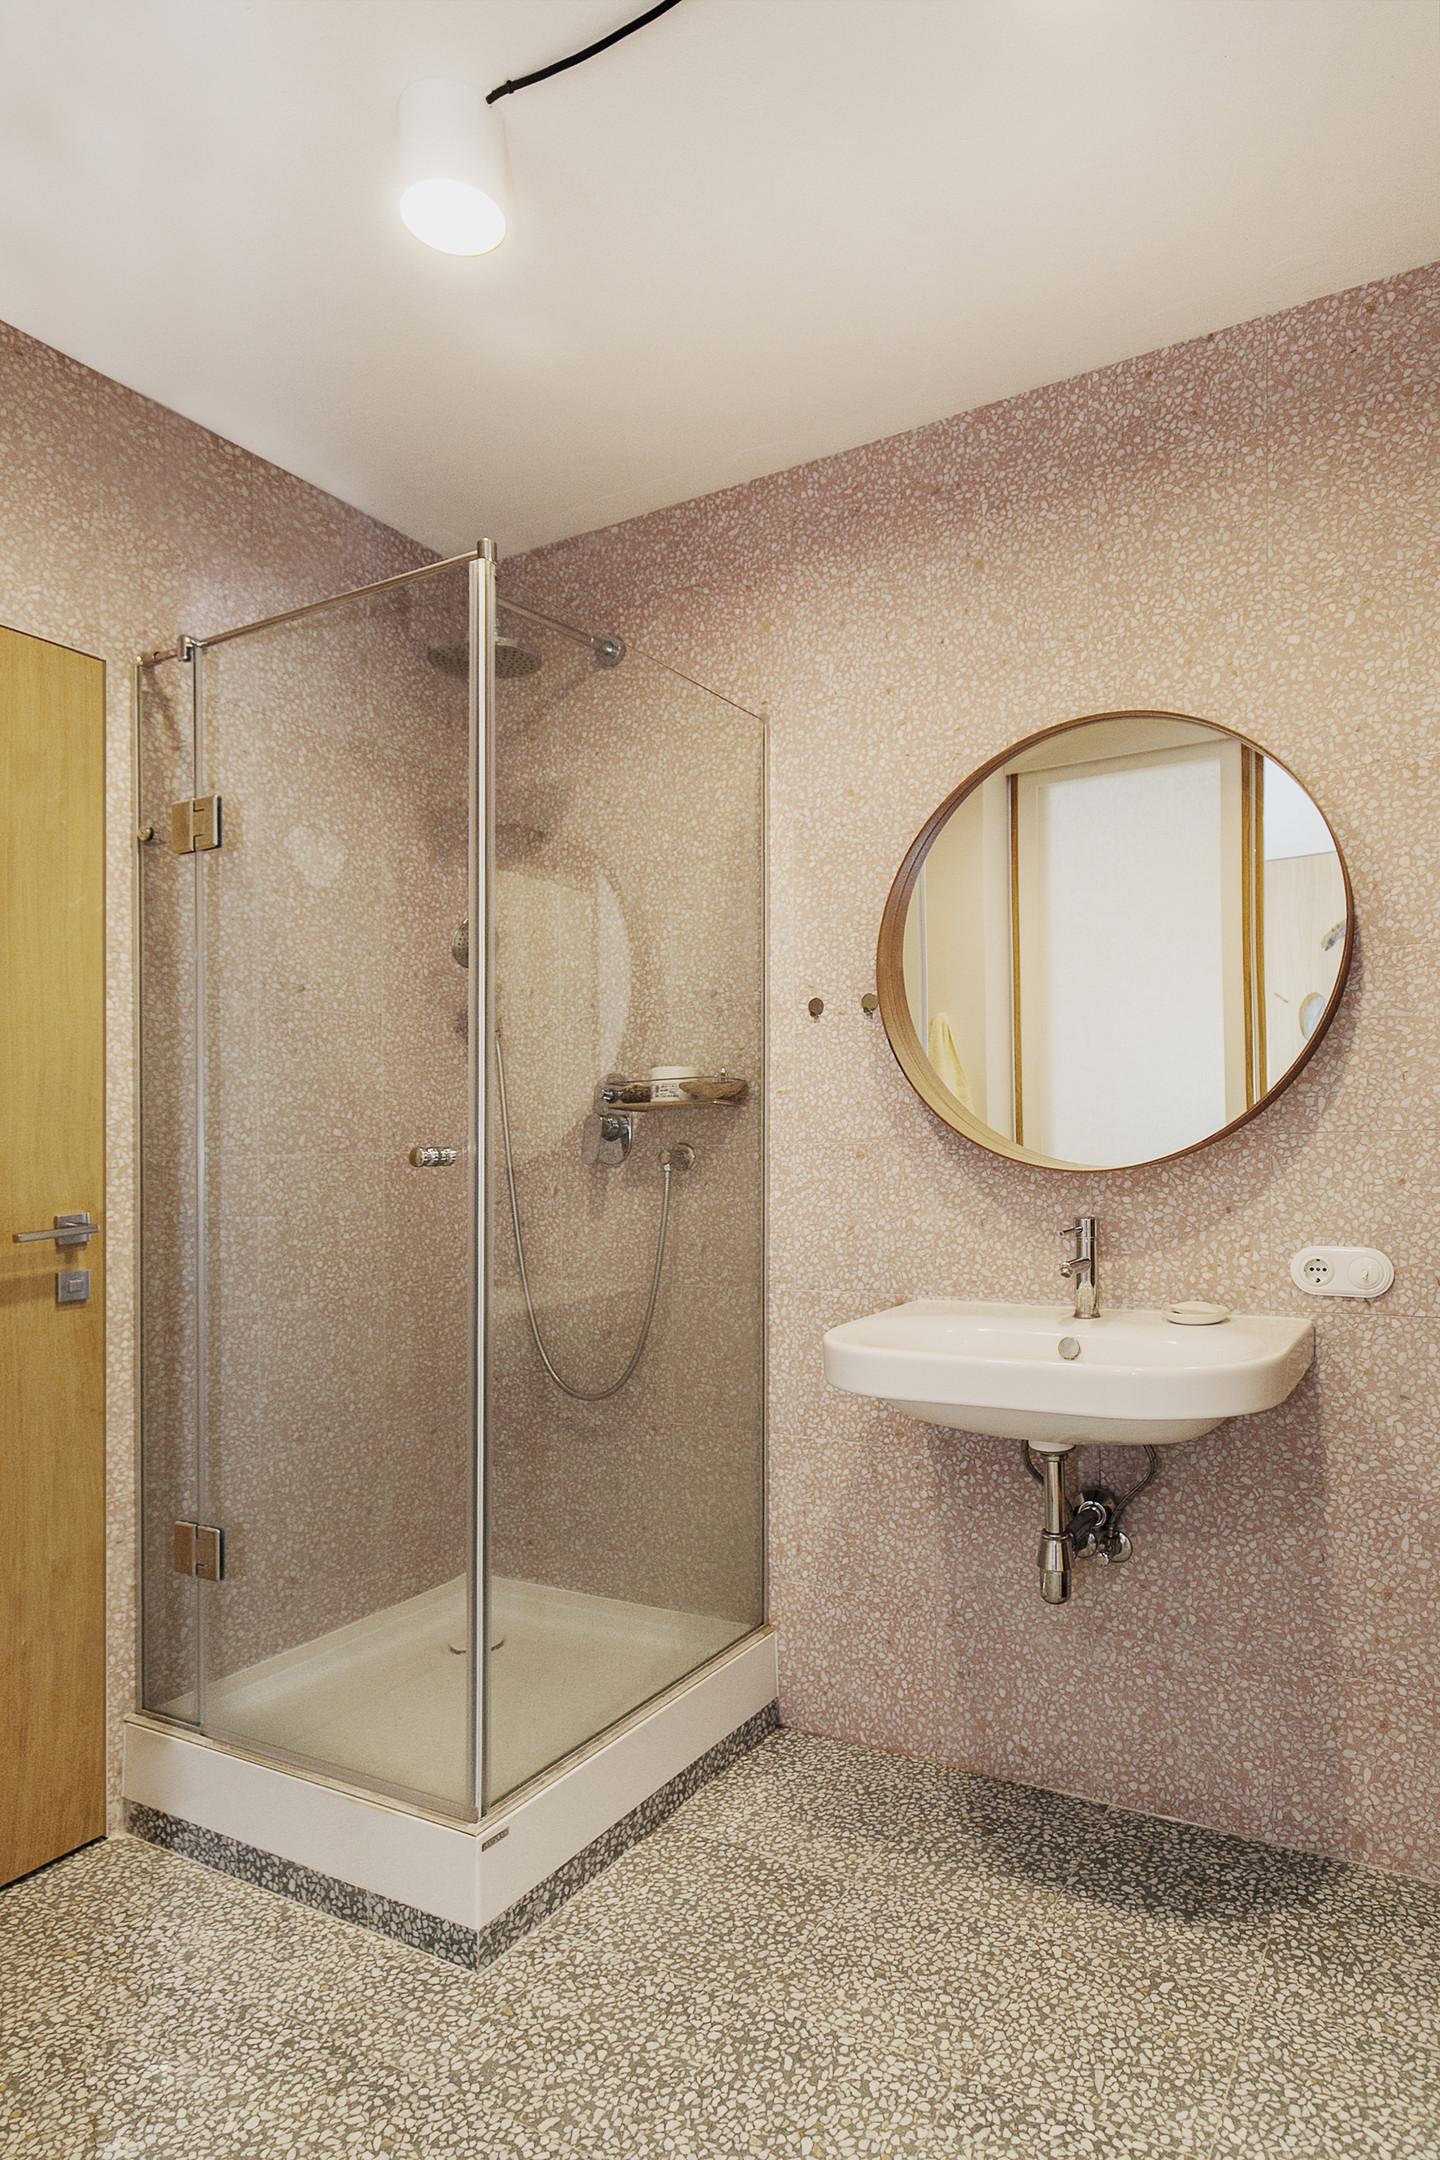 Phòng tắm tối giản nhưng quyến rũ nhờ sự kết hợp của gạch ốp tường hồng nữ tính và gạch lát sàn xám thanh lịch tạo sự tương phản nhẹ nhàng với trần nhà trắng sáng.